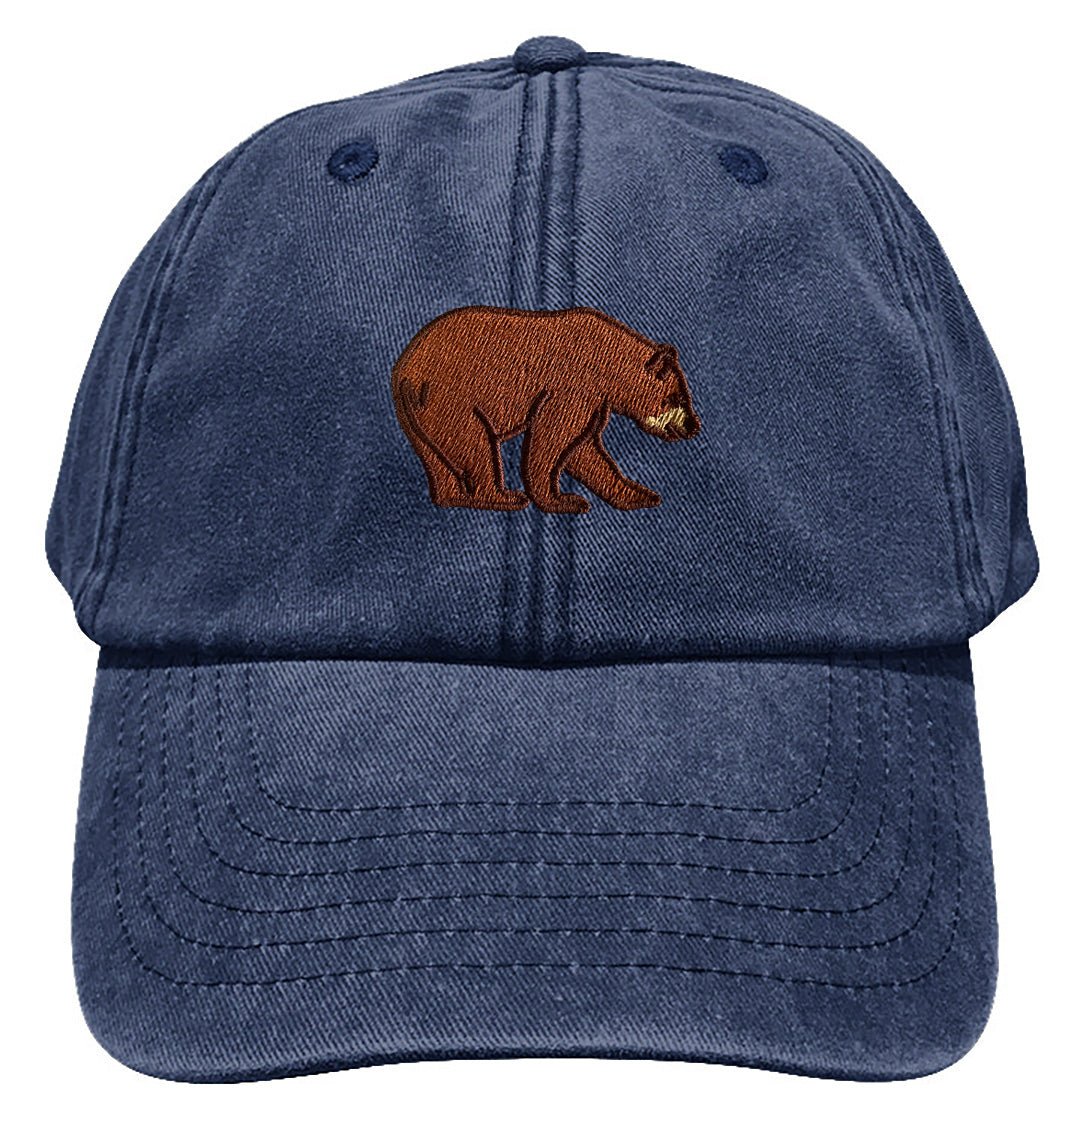 Bear Baseball Cap - Blue Panda